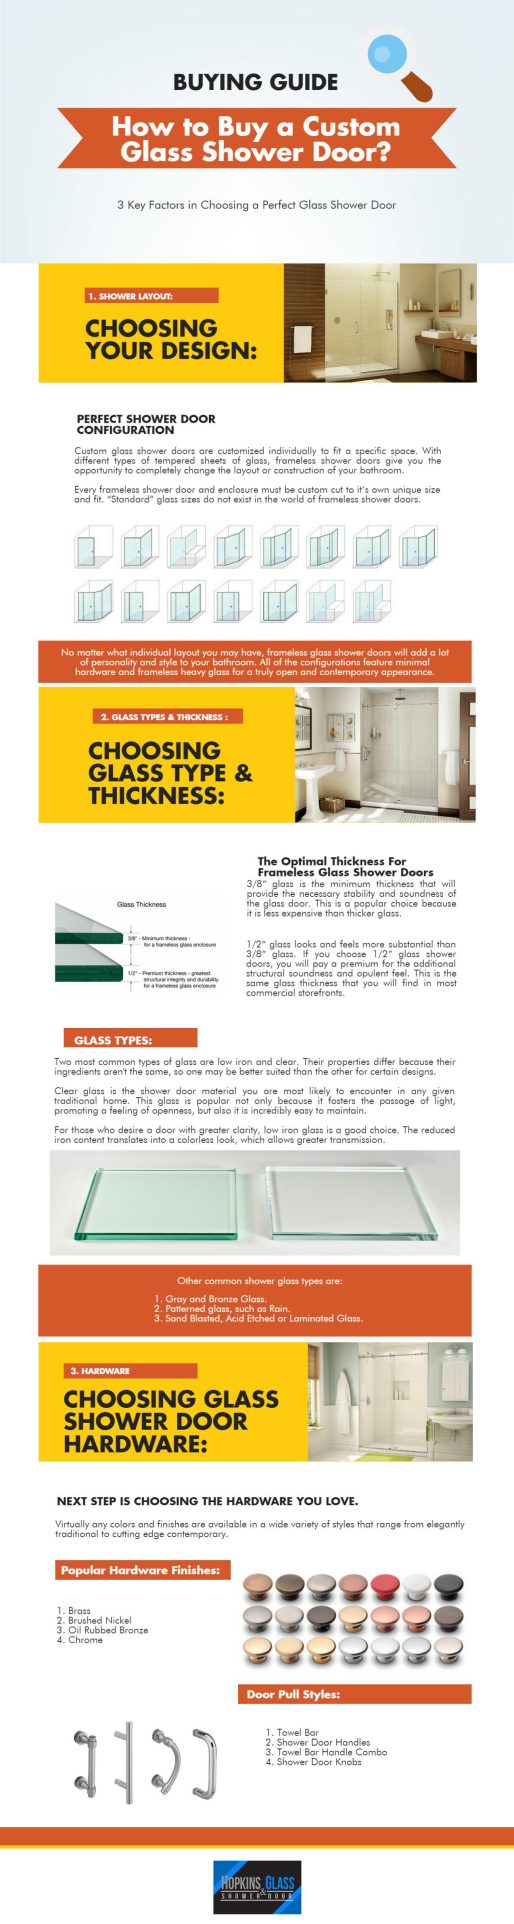 How To Buy Custom Frameless Glass Shower Doors – Buying Guide